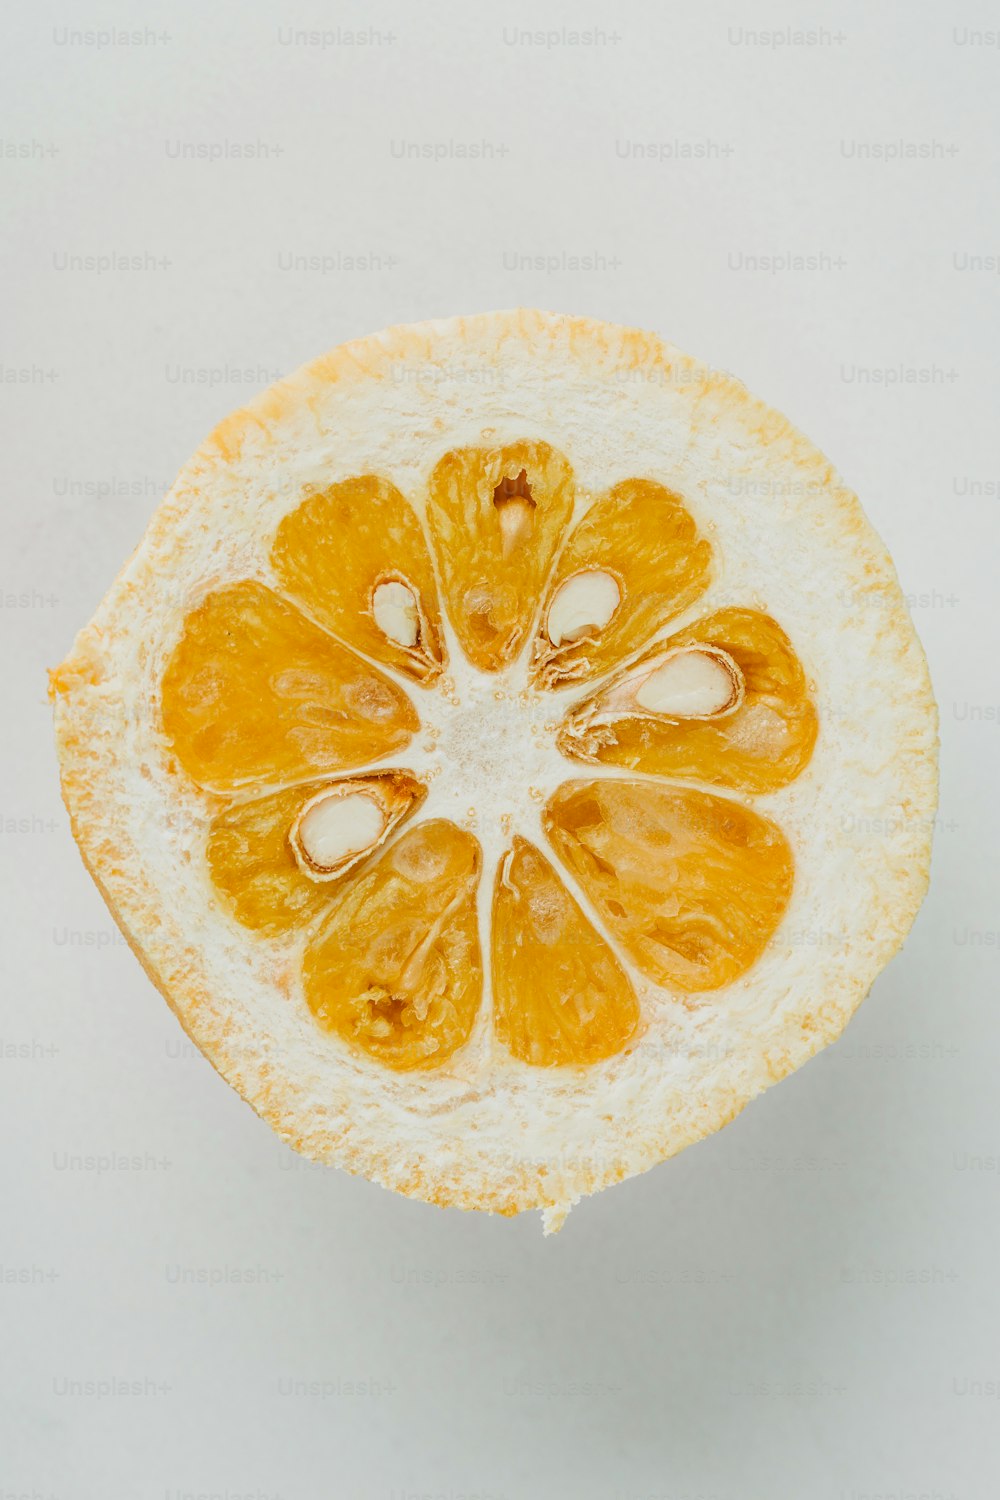 흰색 표면에 반으로 자른 주황색